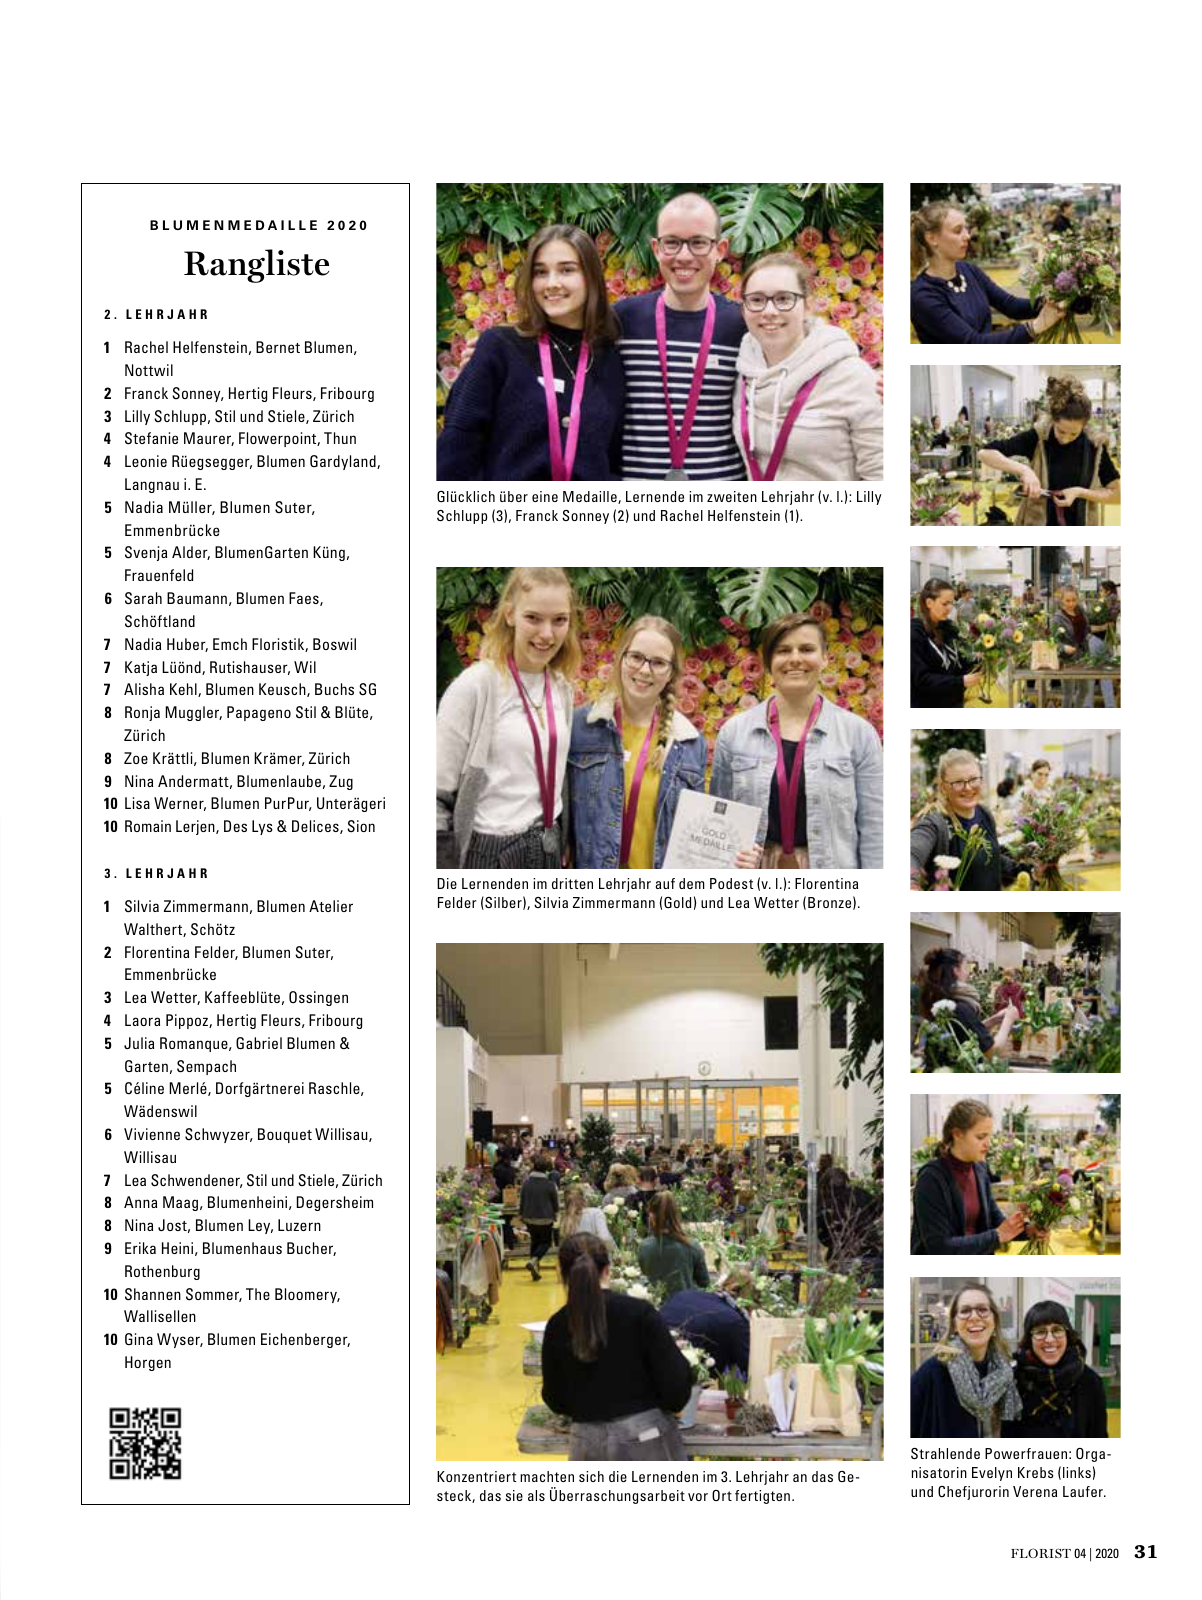 Vorschau Florist - Ausgabe April 2020 Seite 29